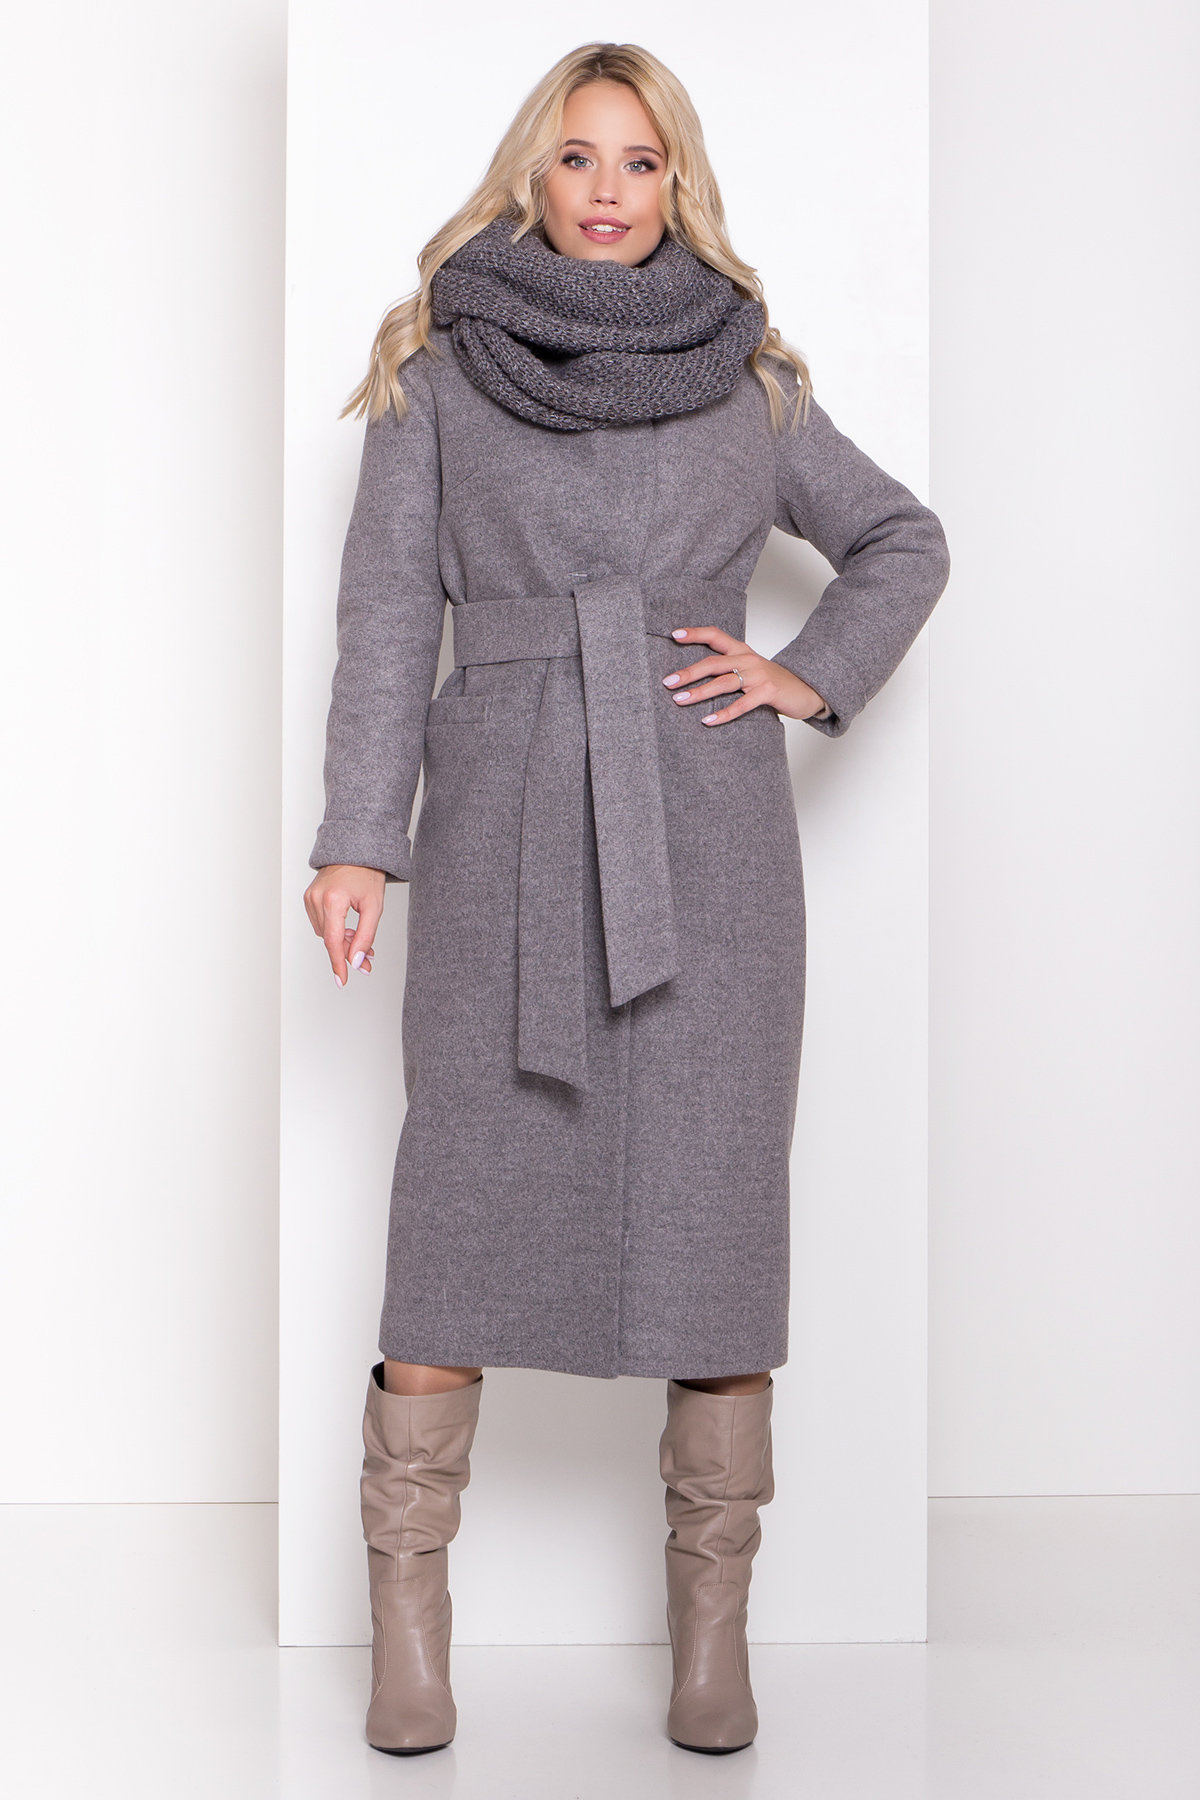 Зимнее пальто для женщин от Modus Длинное пальто зима Вива макси 8341